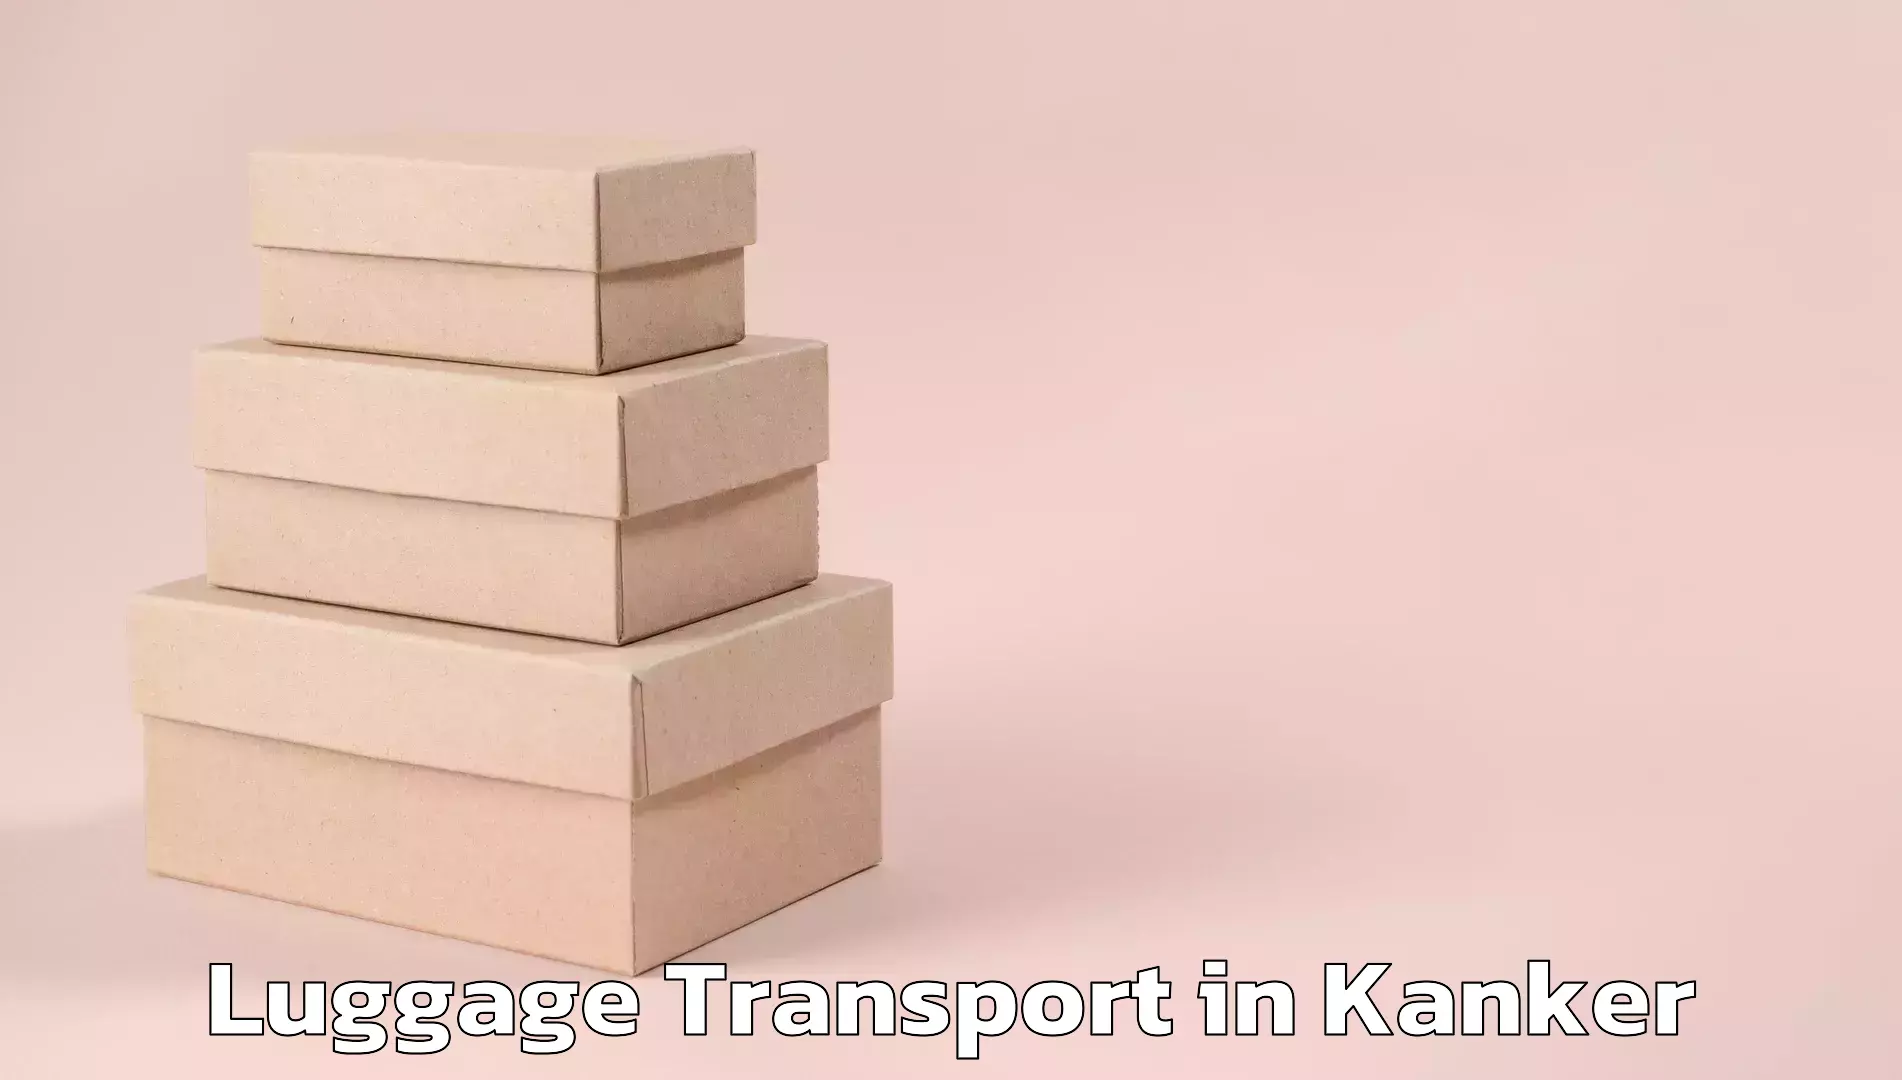 Luggage transport logistics in Kanker